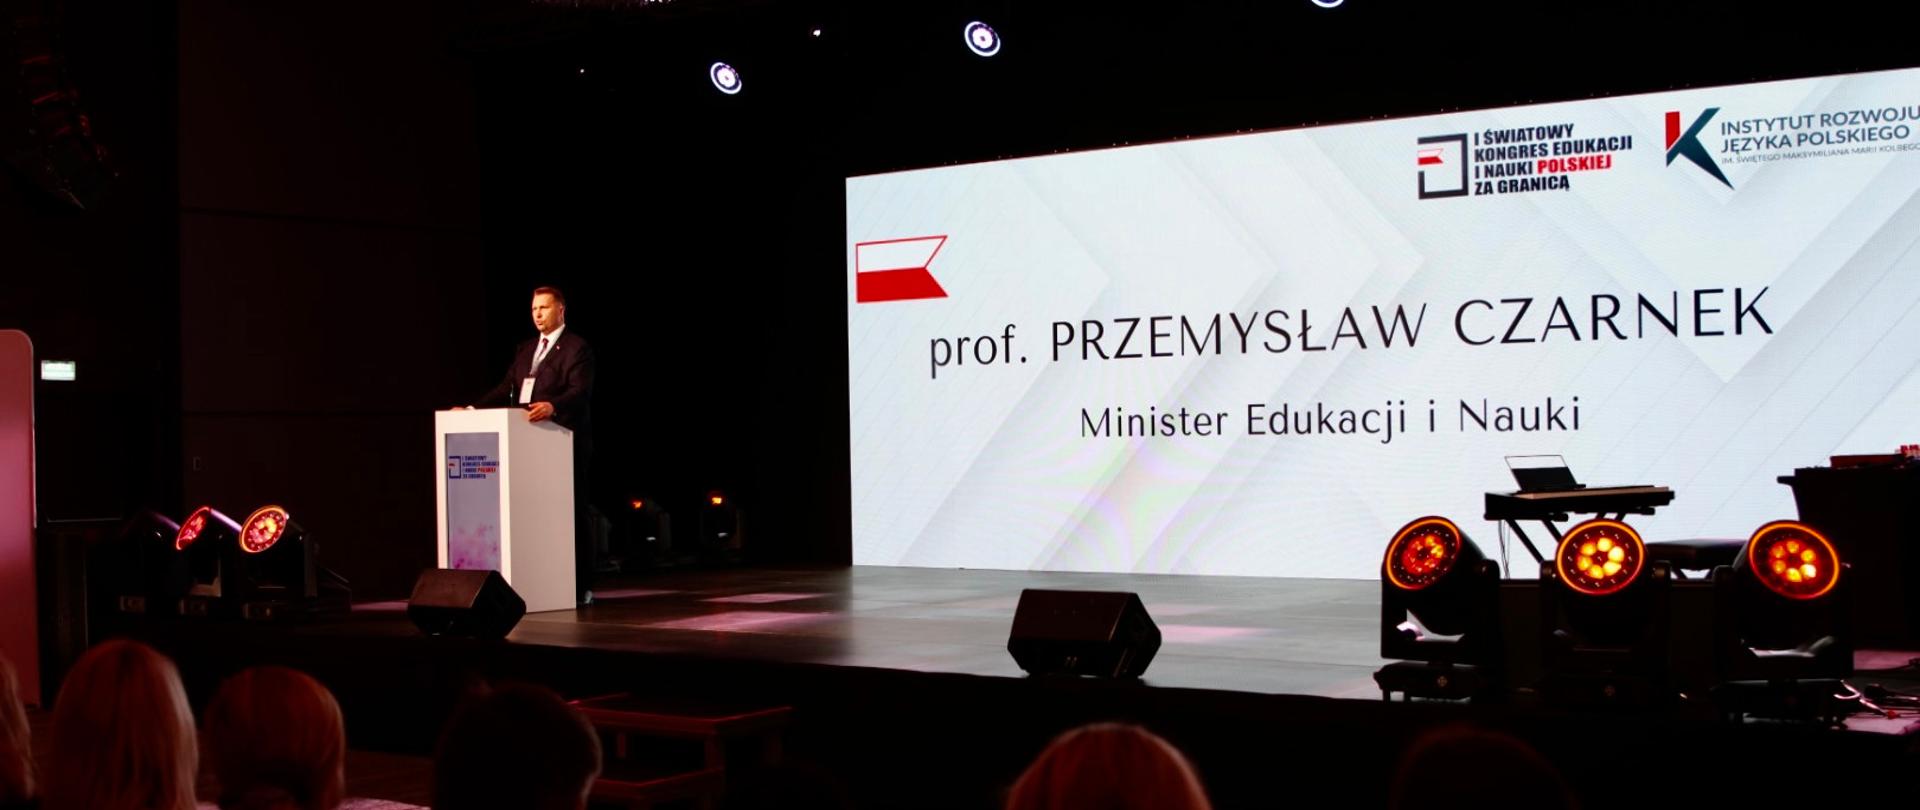 Za mównicą stoi minister Czarnek i mówi do mikrofonu, za nim na ścianie napis Prof. Przemysław Czarnek, Minister Edukacji i Nauki, przed nim zaciemniona sala.